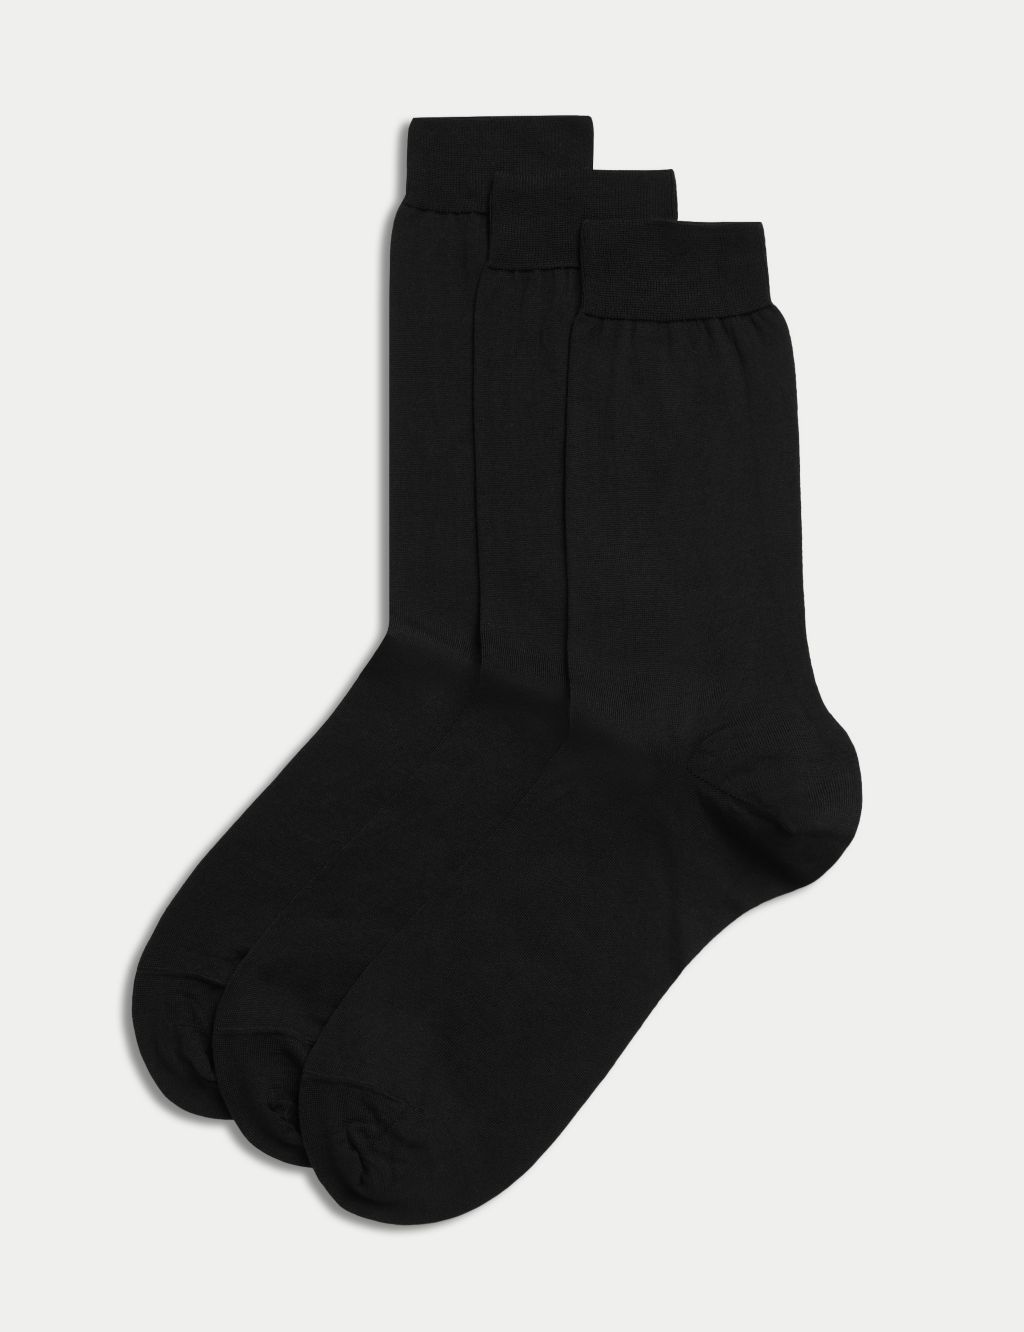 Two Whom Crew Love Socks - Black / White - TwoWhom